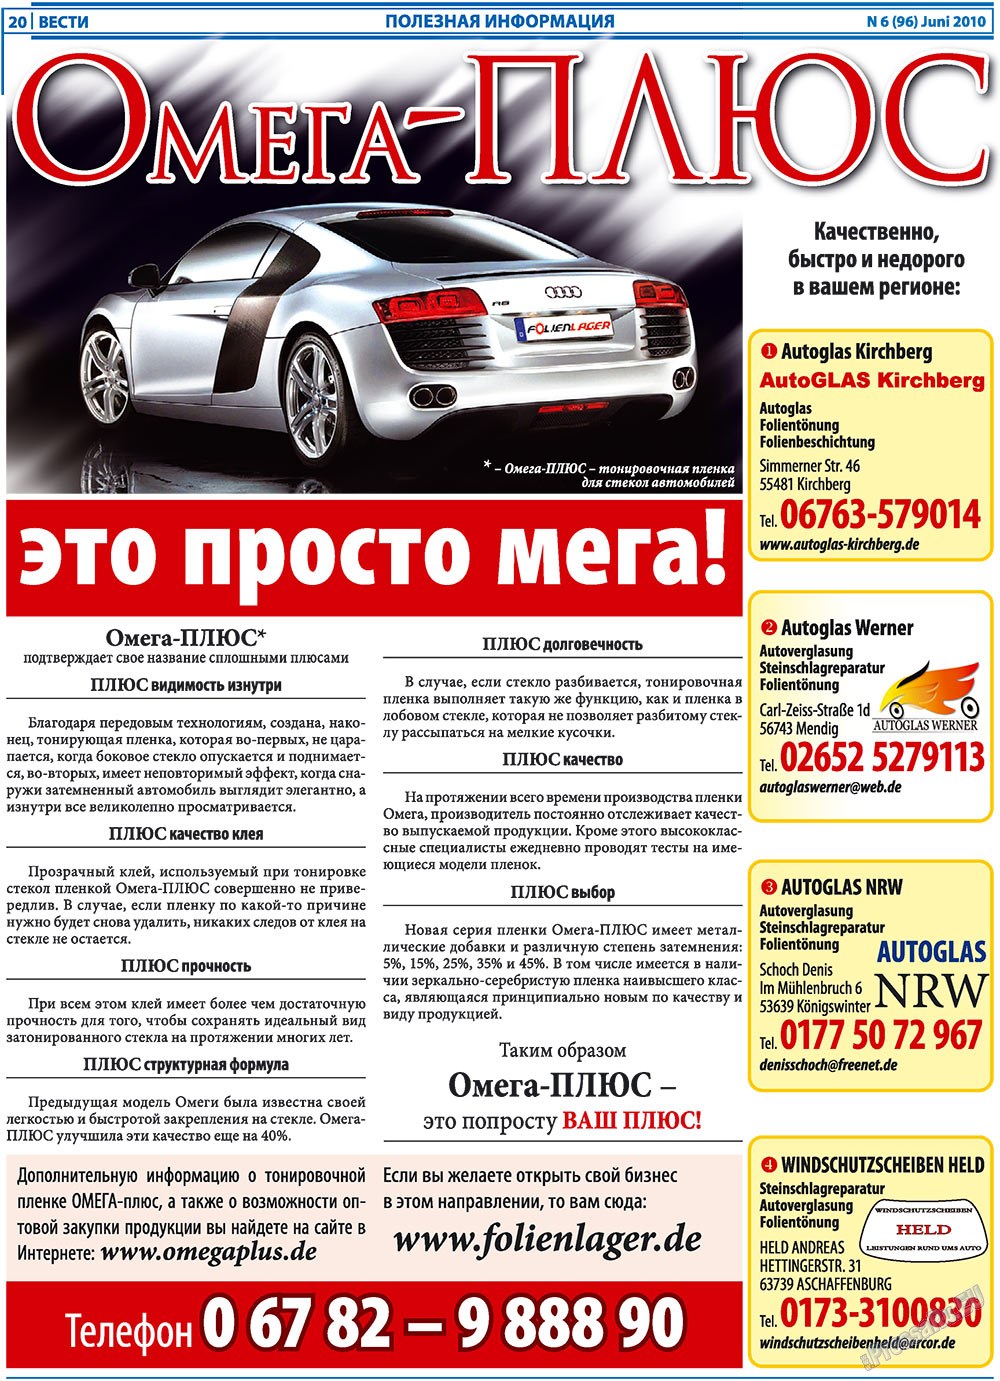 Вести, газета. 2010 №6 стр.20